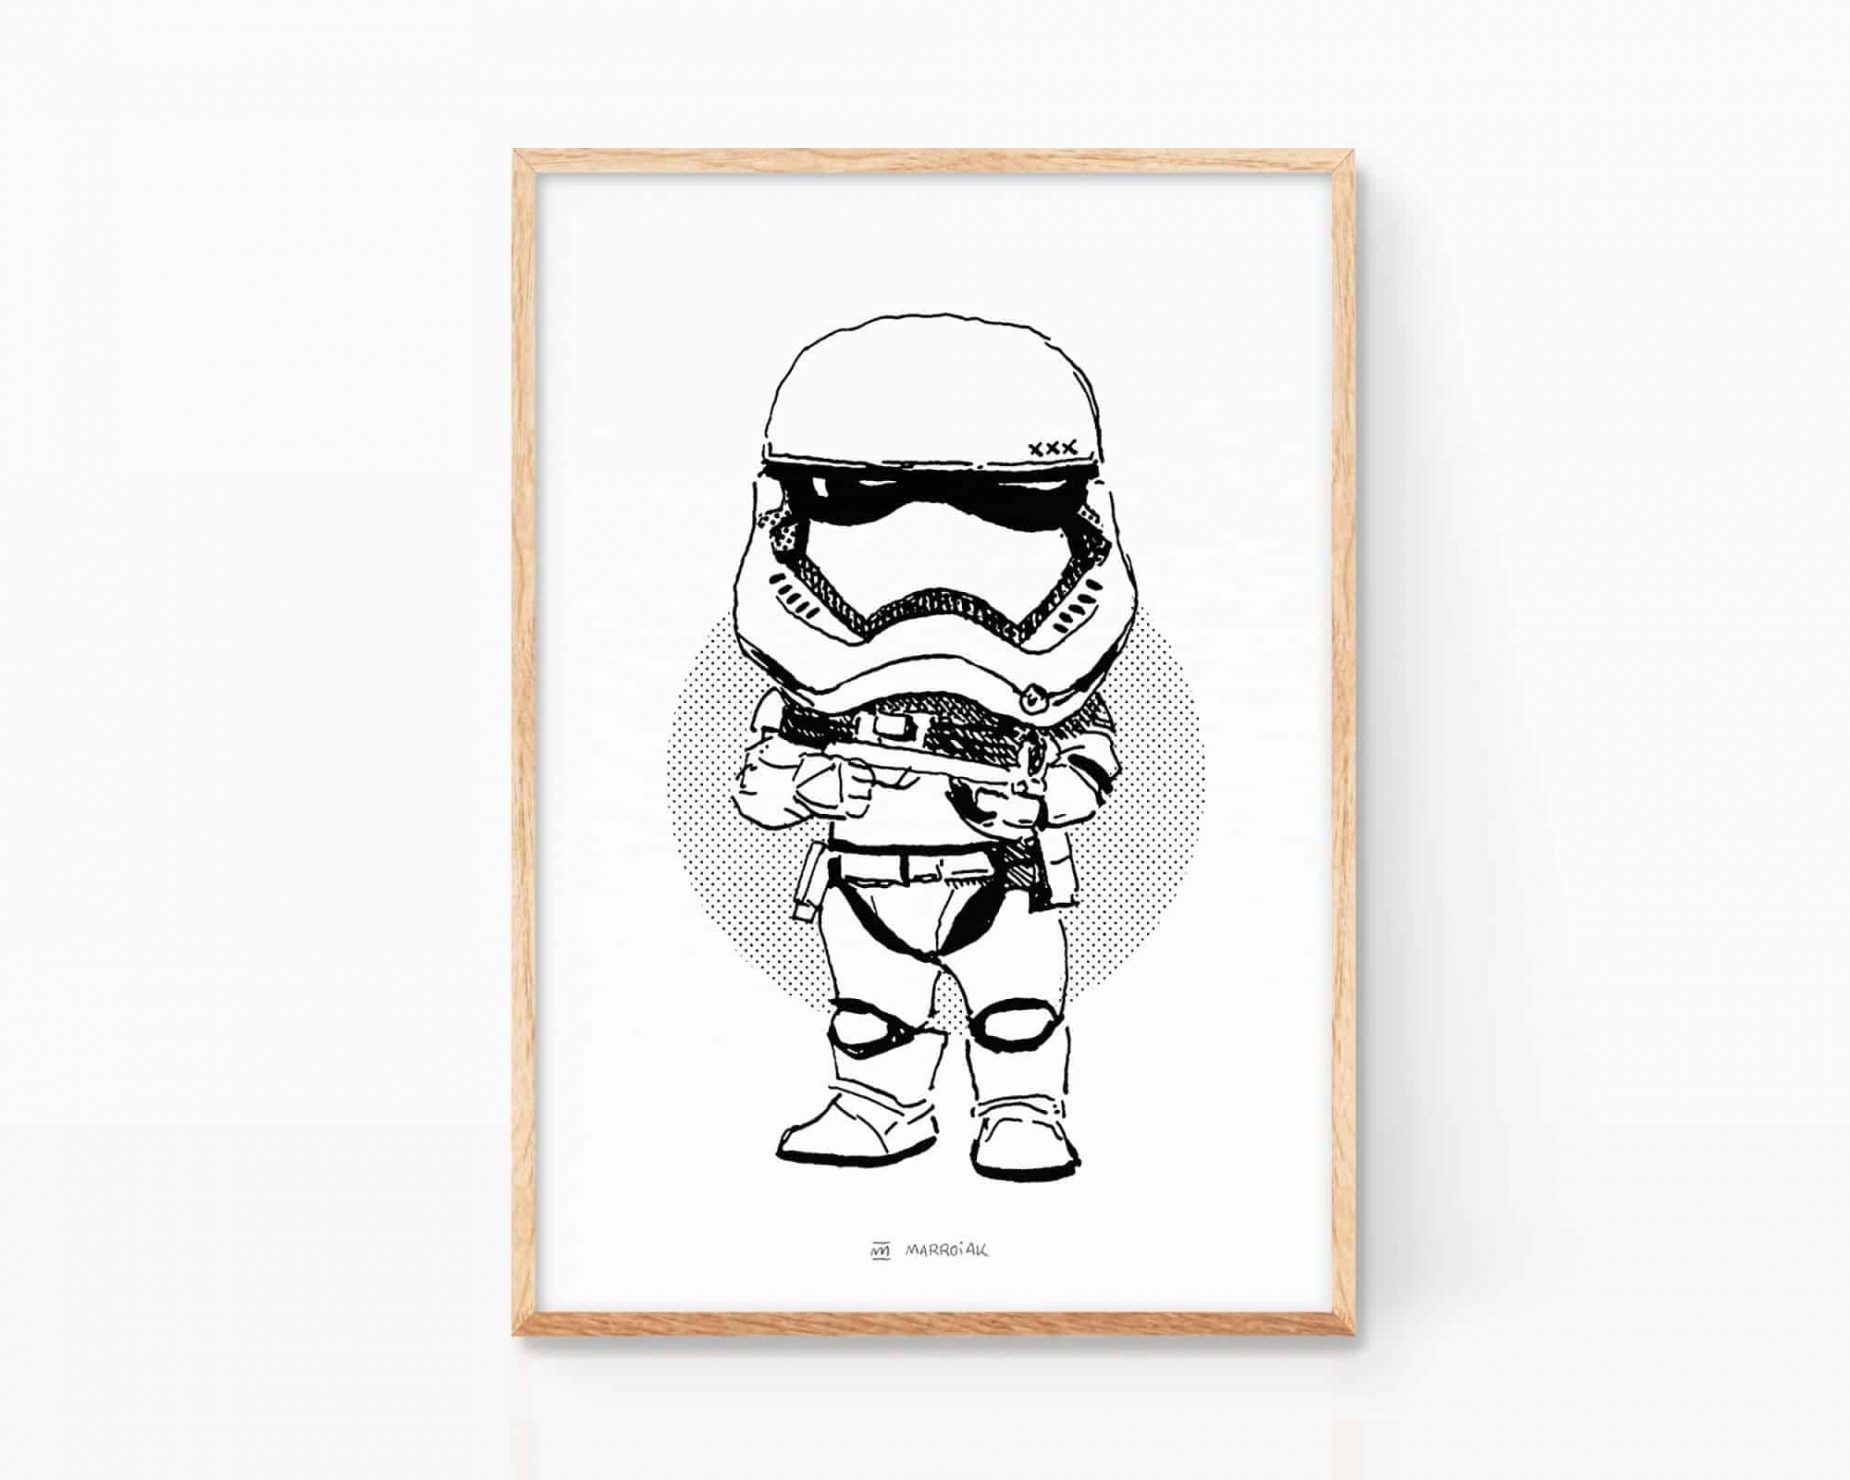 Lámina de Star Wars: Tropa de Asalto. Print con una ilustración en blanco y negro de Stormtrooper, el soldado imperial de La Guerra de las Galaxias. Cuadro decorativo con un poster exclusivo para enmarcar.